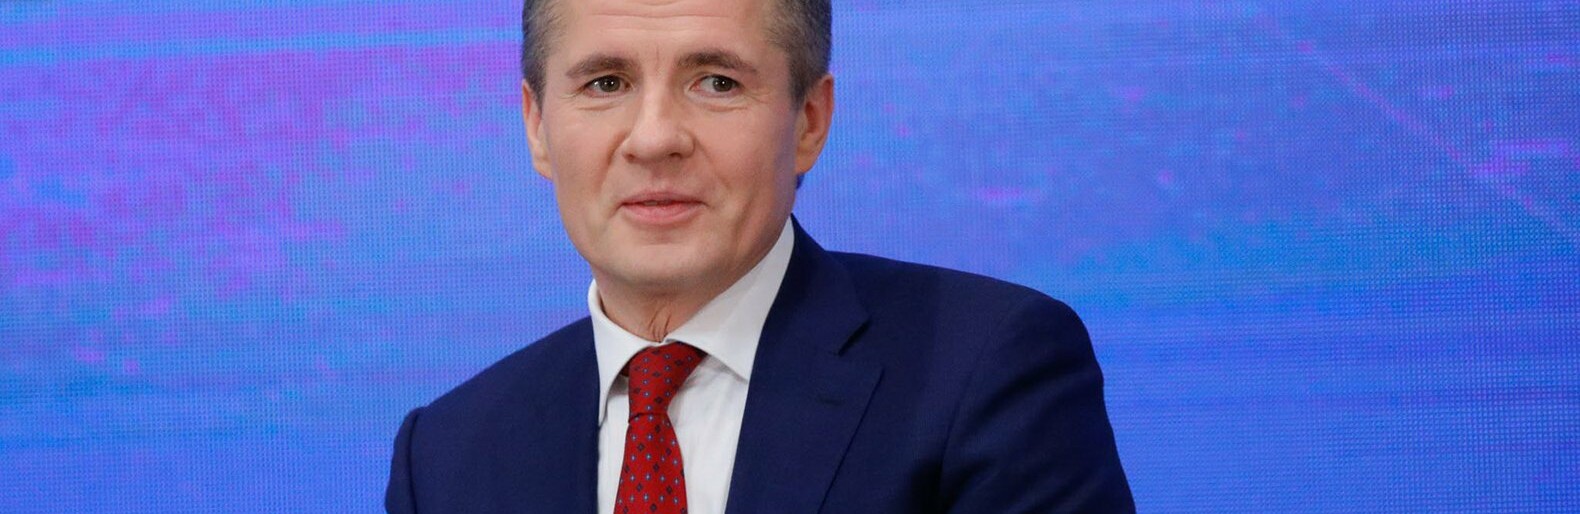 Гладков занял 8-е место в итоговом рейтинге губернаторов 